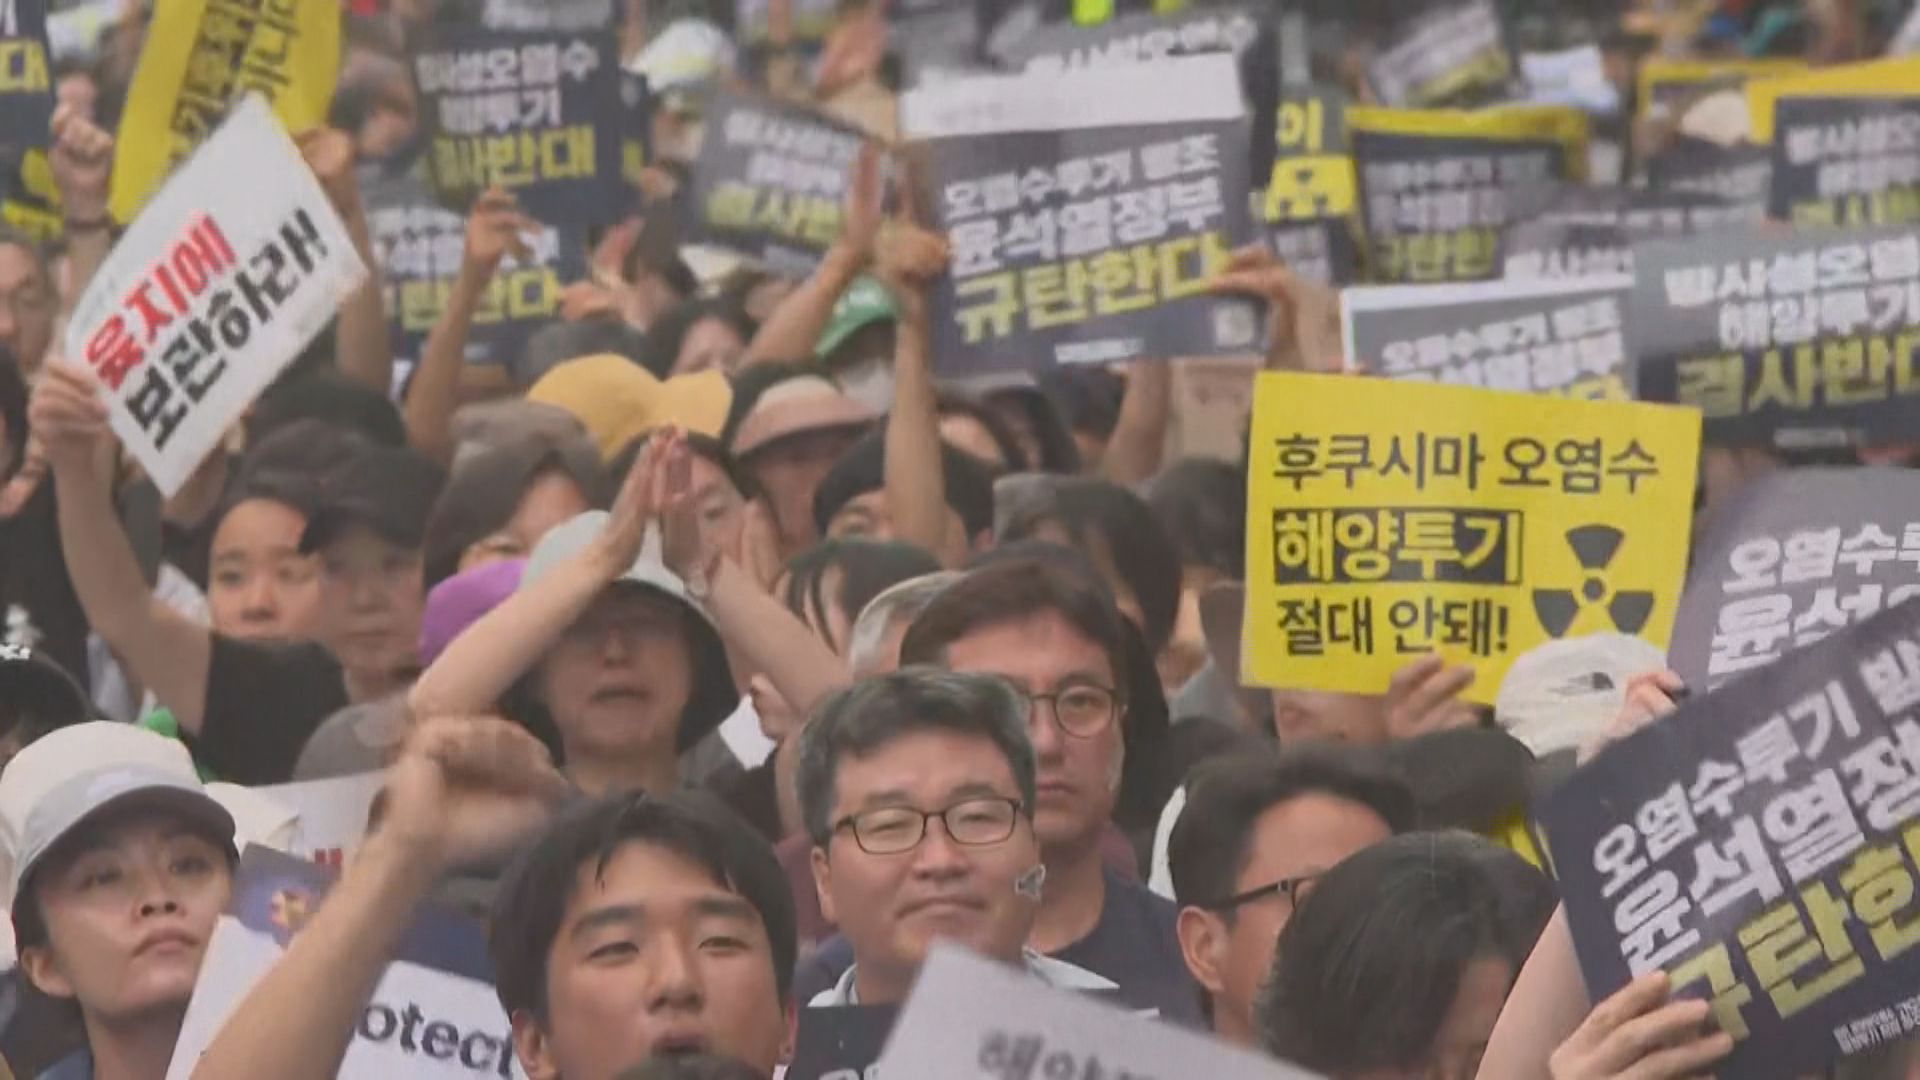 首爾數百人集會抗議日本計劃排放核廢水